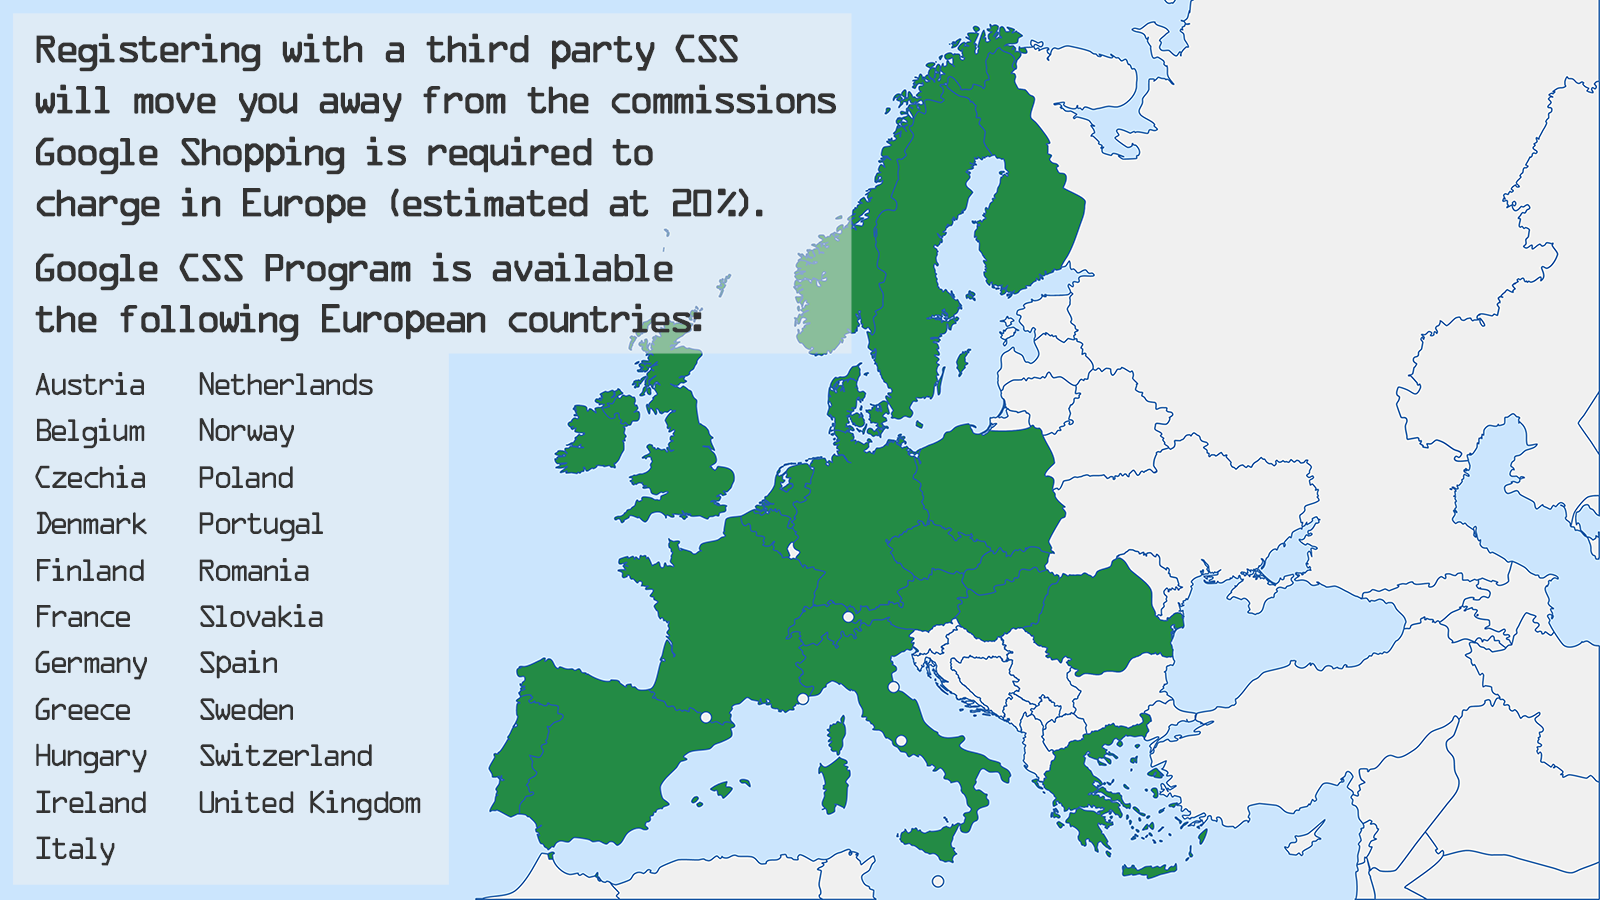 Le programme Google CSS est disponible dans 21 pays européens